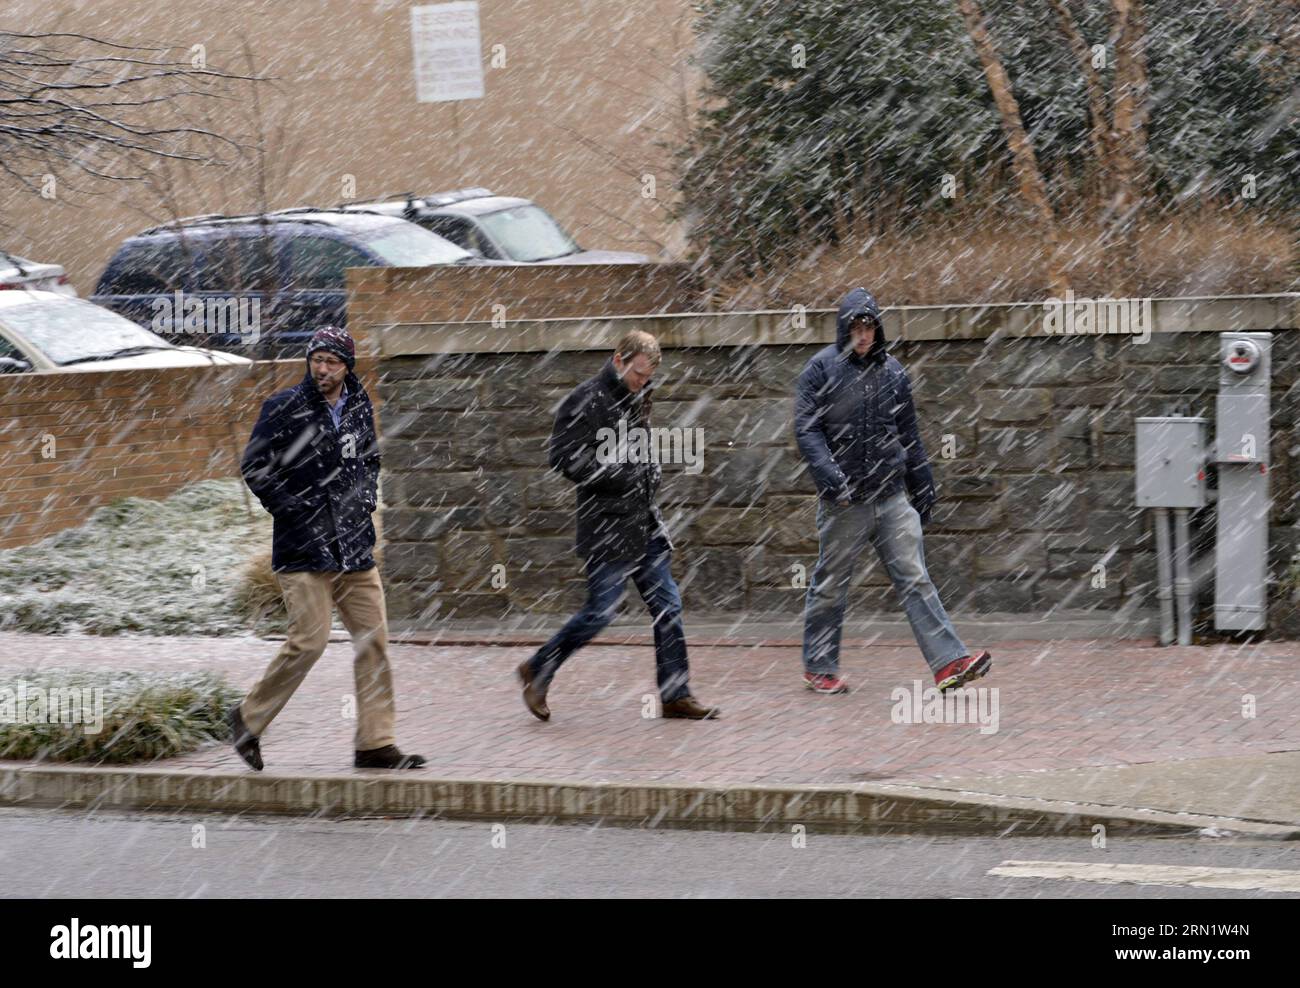 (150121) -- WASHINGTON D.C., 21 gennaio 2015 -- la gente cammina attraverso la neve ad Arlington, Virginia, a circa tre chilometri da Washington D.C., Stati Uniti, 21 gennaio 2015. ) US-ARLINGTON-TEMPO-NEVICATE YinxBogu PUBLICATIONxNOTxINxCHN Washington D C 21 gennaio 2015 celebrità camminano attraverso la neve ad Arlington Virginia a circa tre chilometri da Washington D C gli Stati Uniti 21 gennaio 2015 U.S. Arlington tempo nevicate YinxBogu PUBLICATIONxNOTxINxCHN Foto Stock